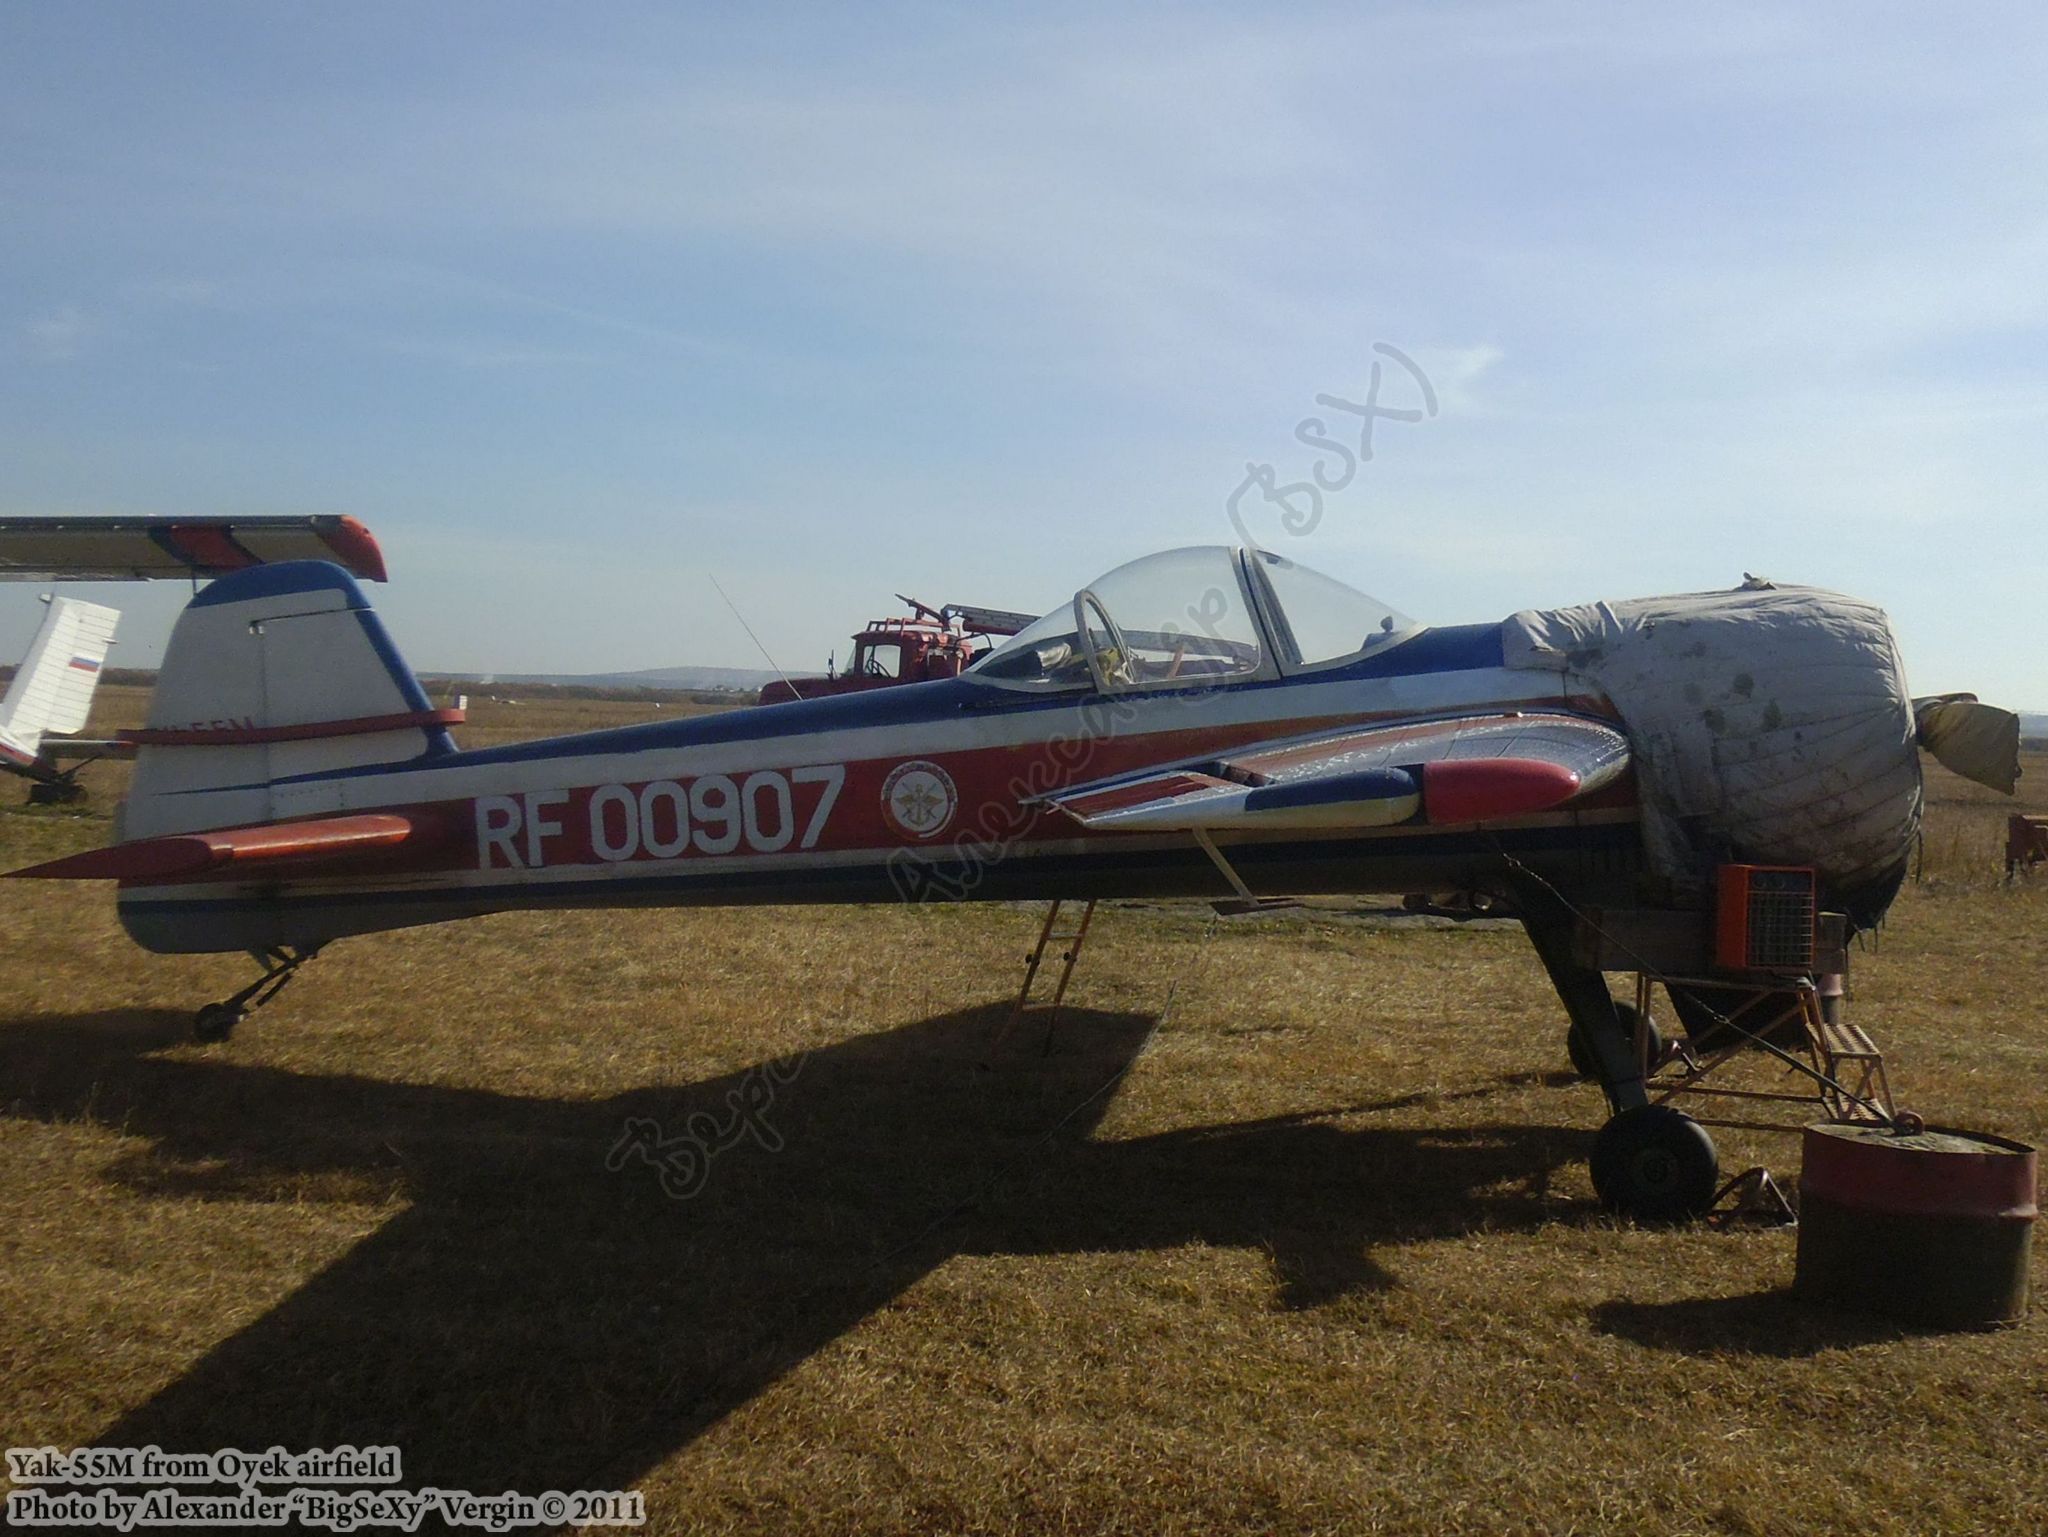 Yak-55M (RF-00907)_Oyek_009